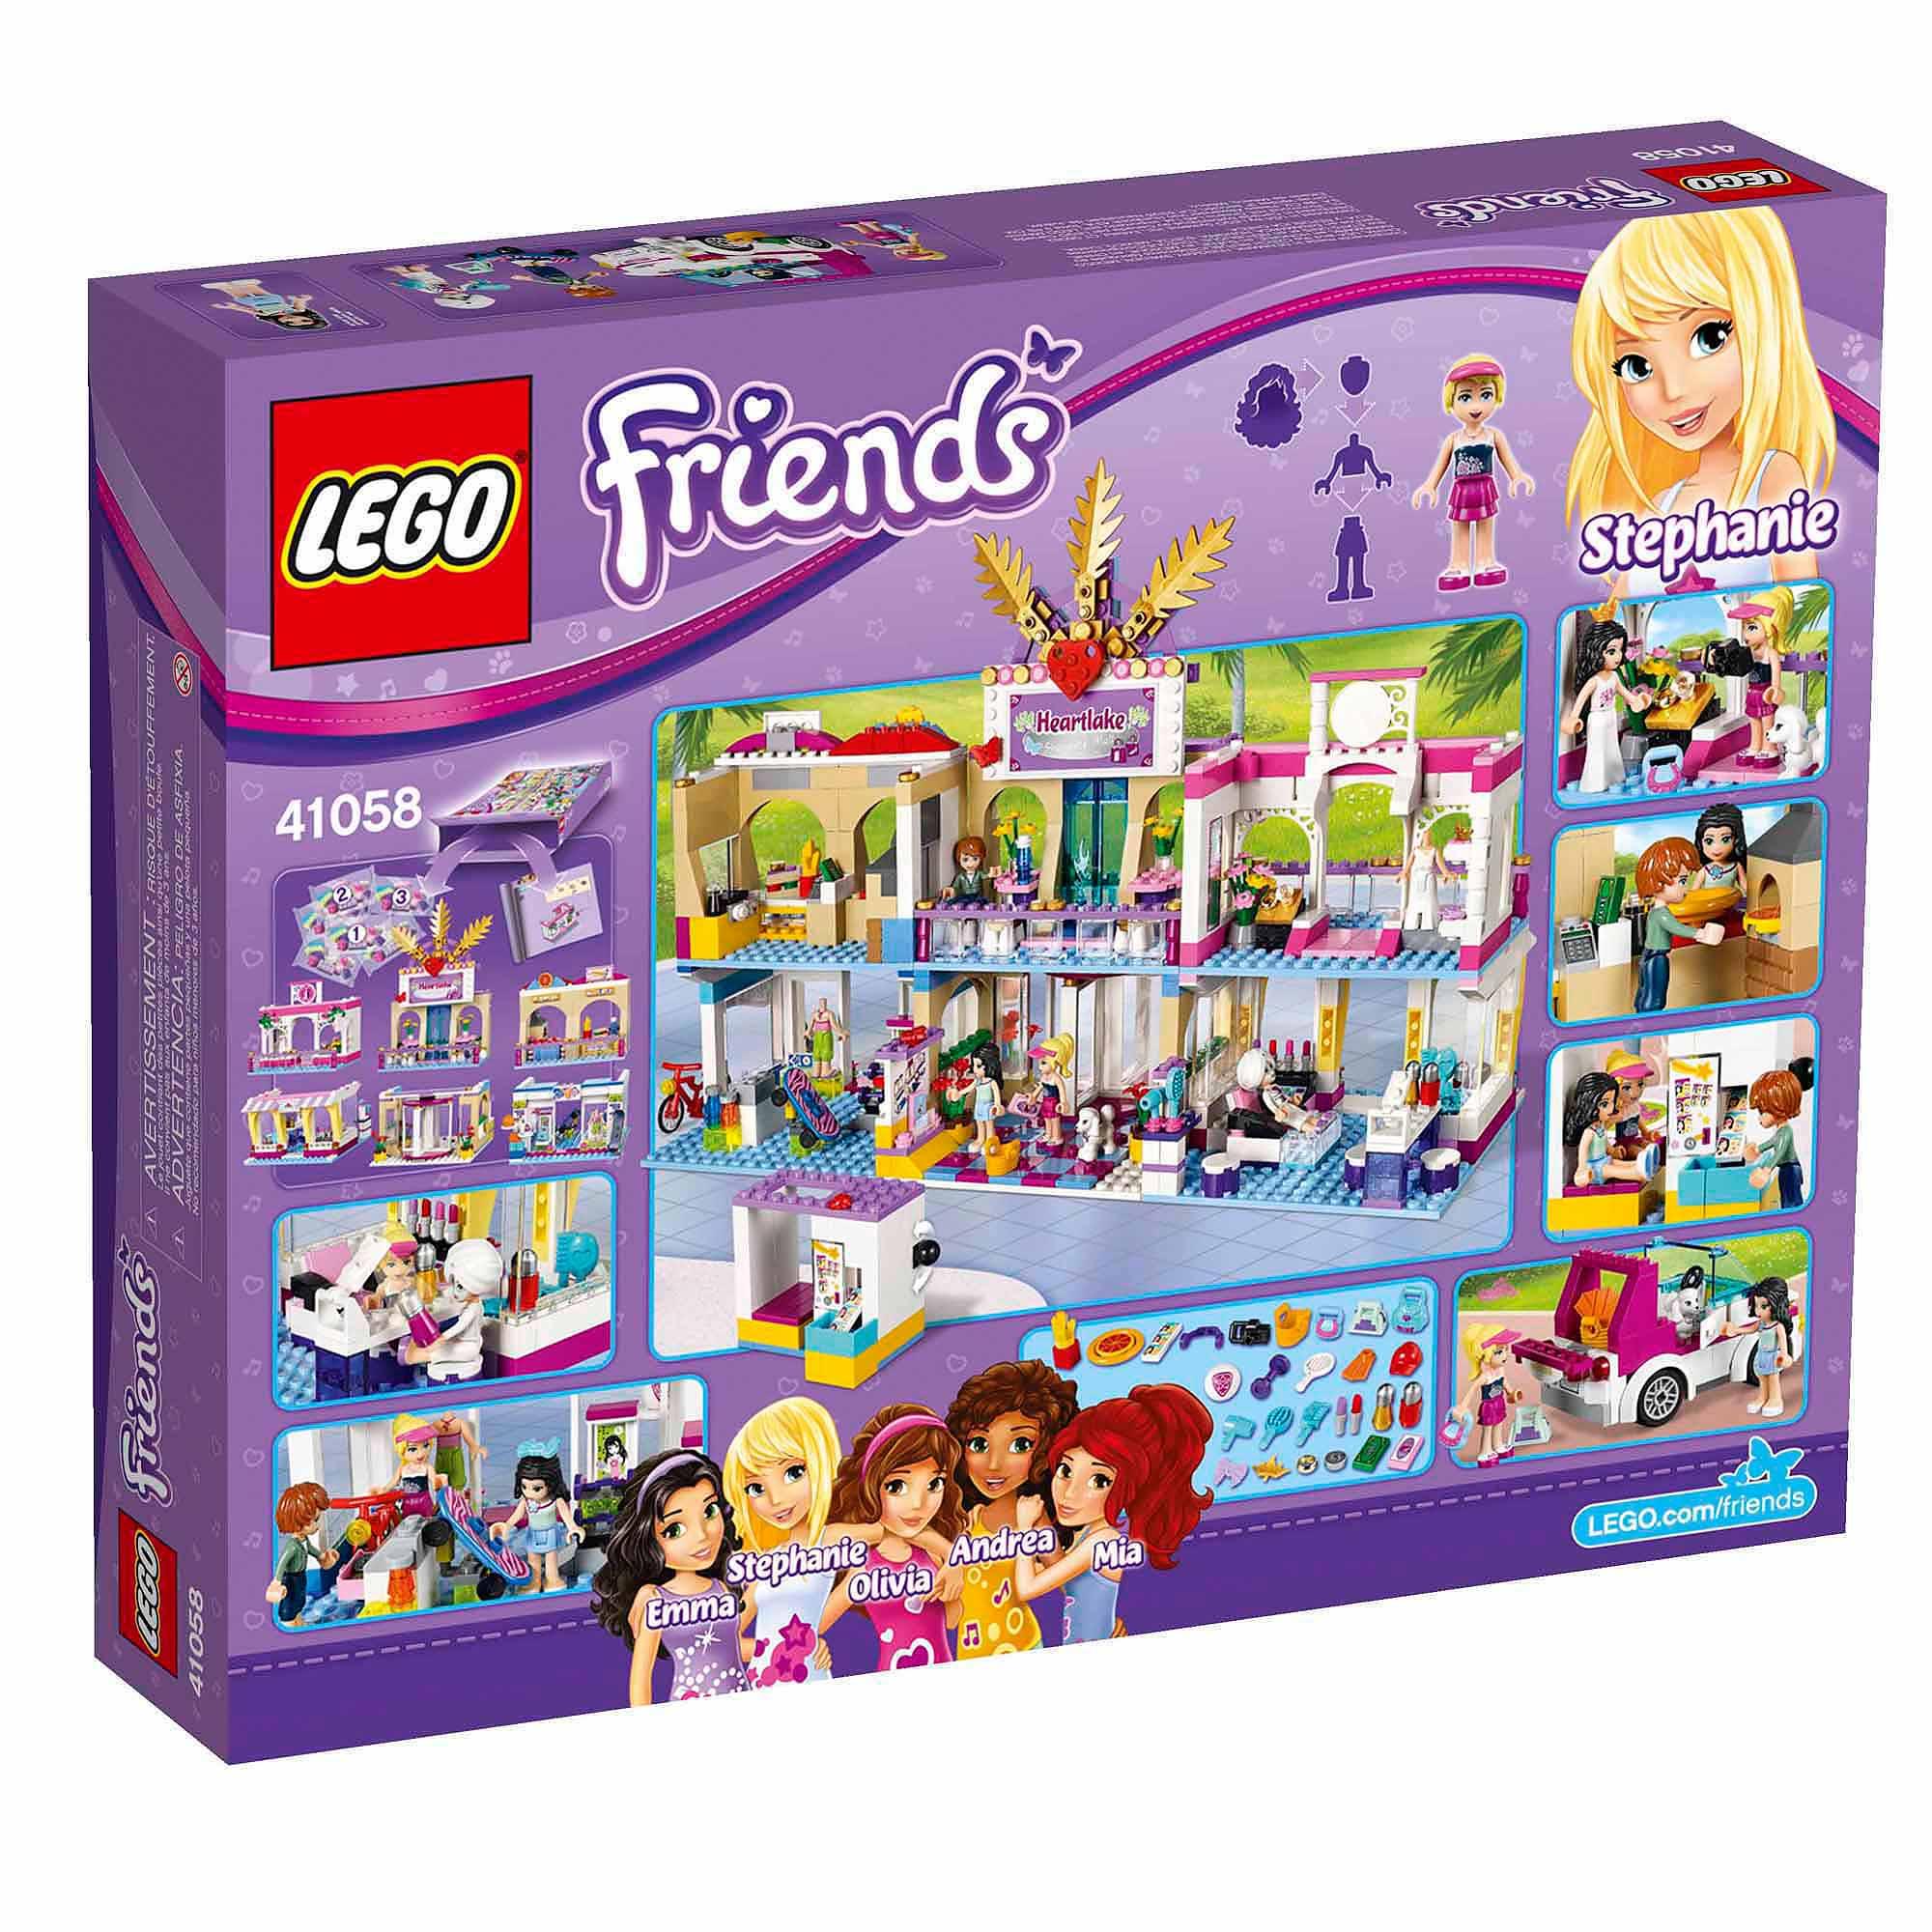 Đồ chơi Lego Friends Heartlake Shopping Mall 41058 – Trung tâm thương mại thành phố